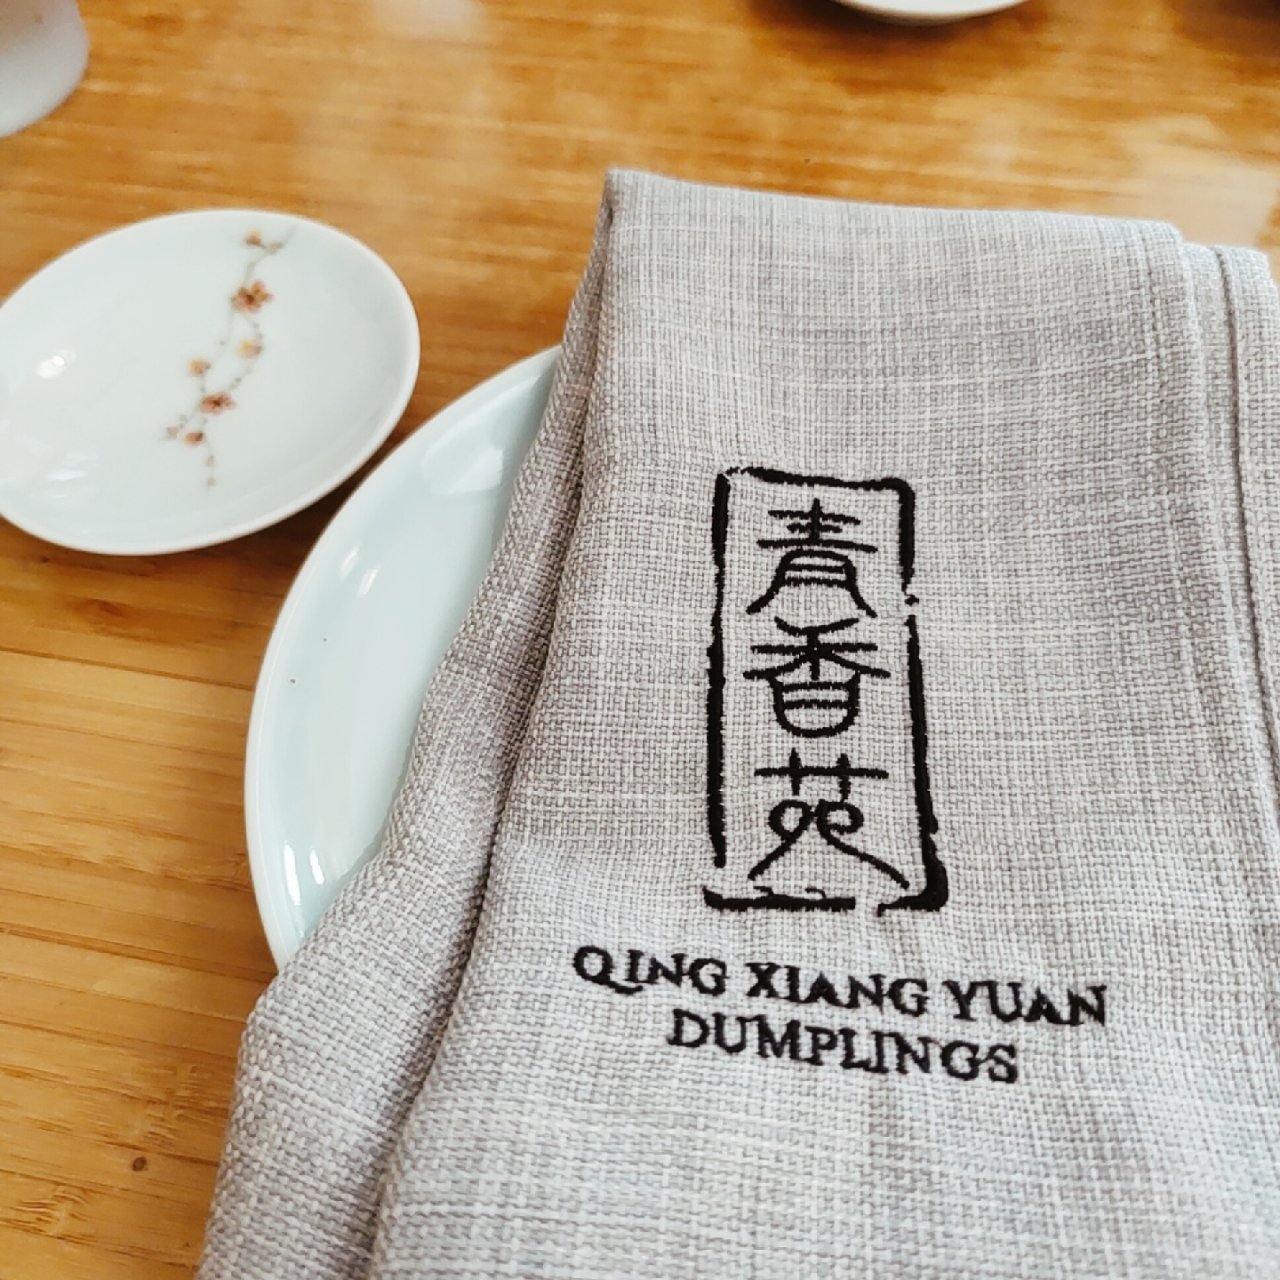 Qing Xiang Yuan Dumpling